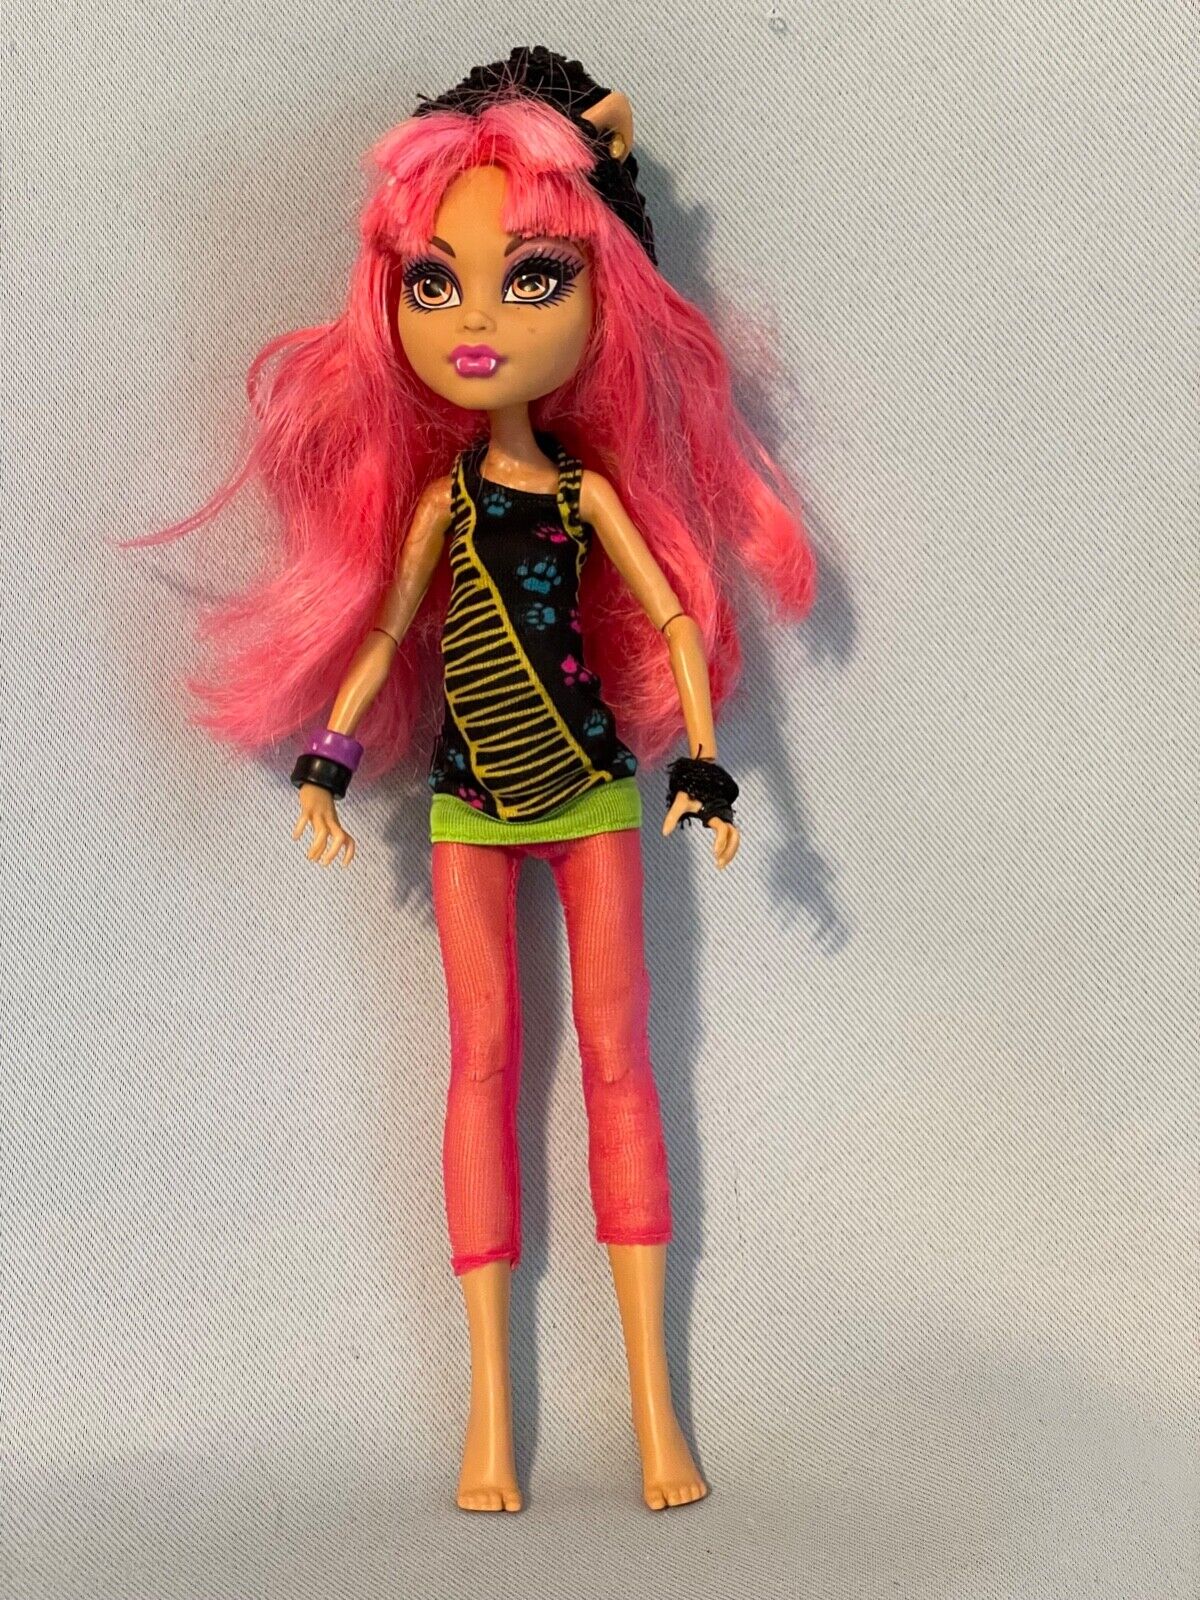 Monster High Howleen Wolf Doll 13 Wishes eBay